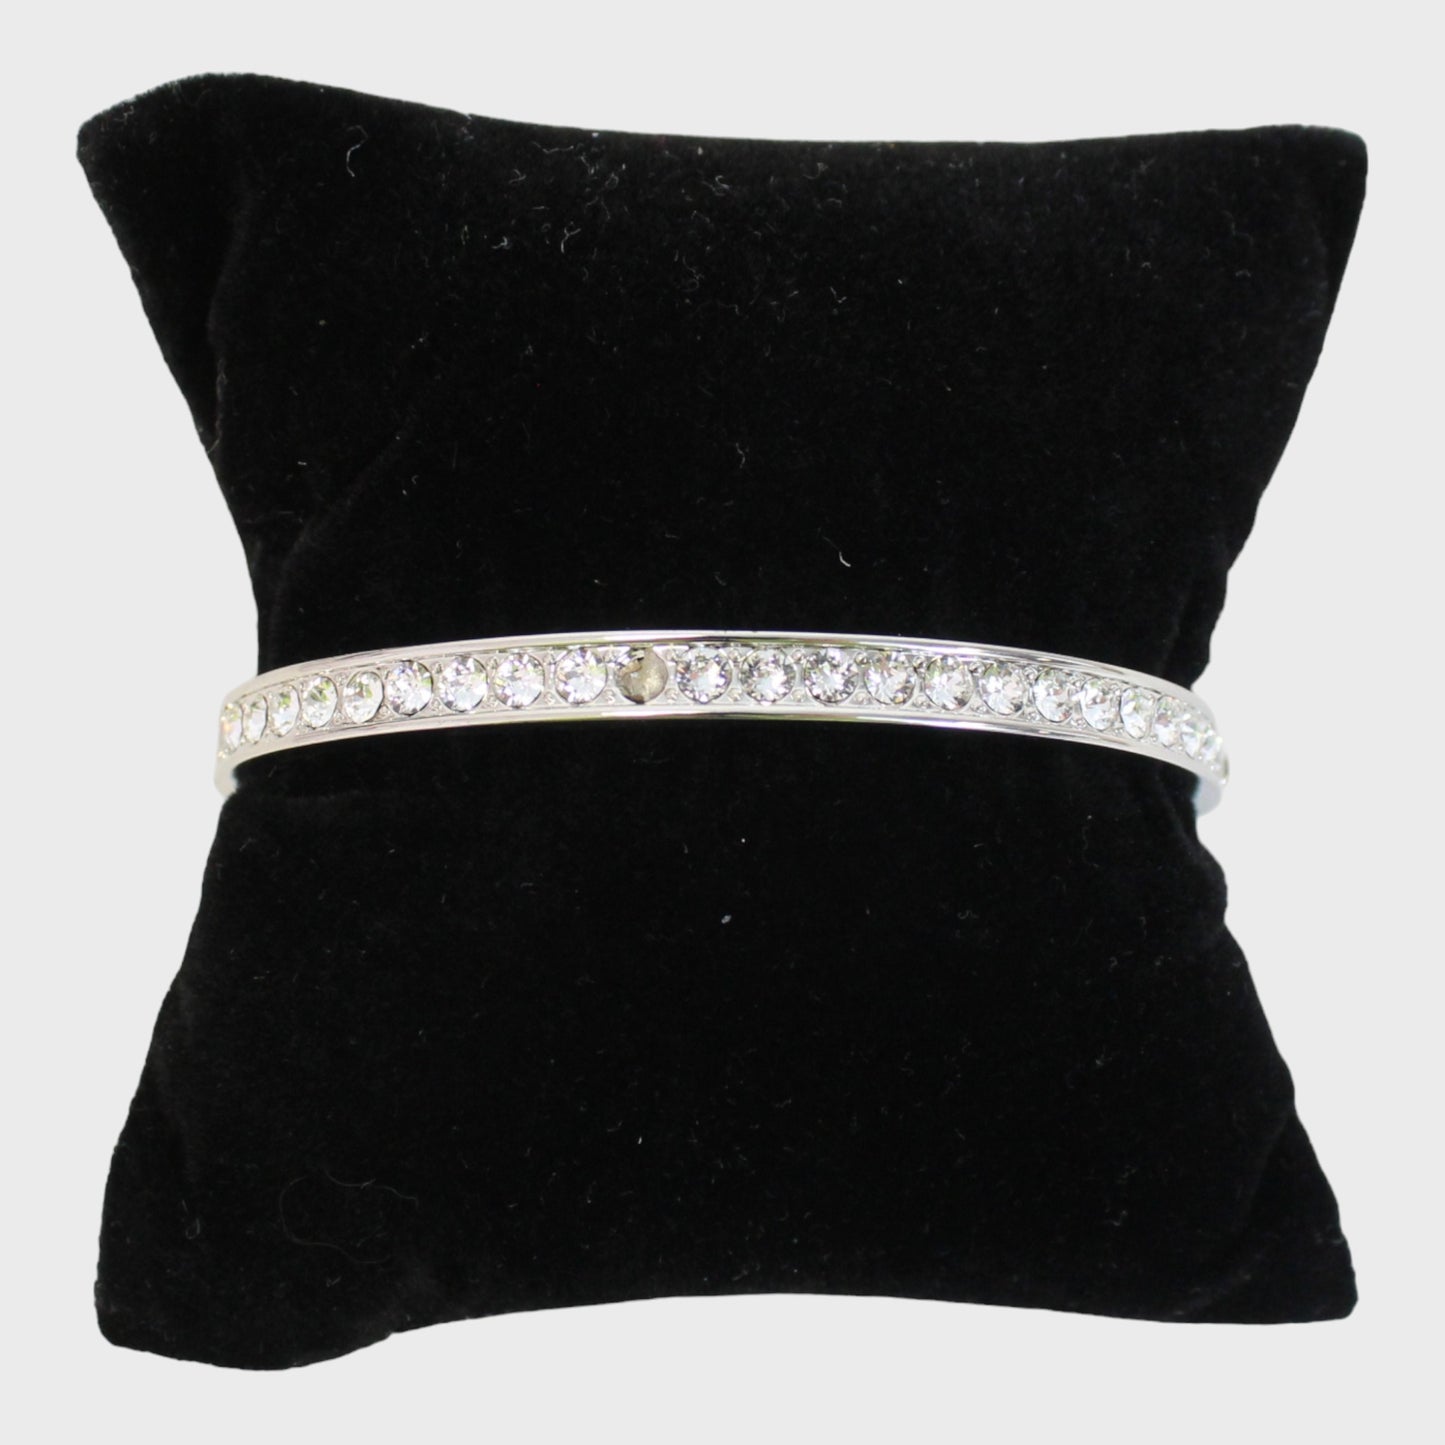 DESIGNER Lady's/Kid's Bracelet with Gems Silver/Rose Gold